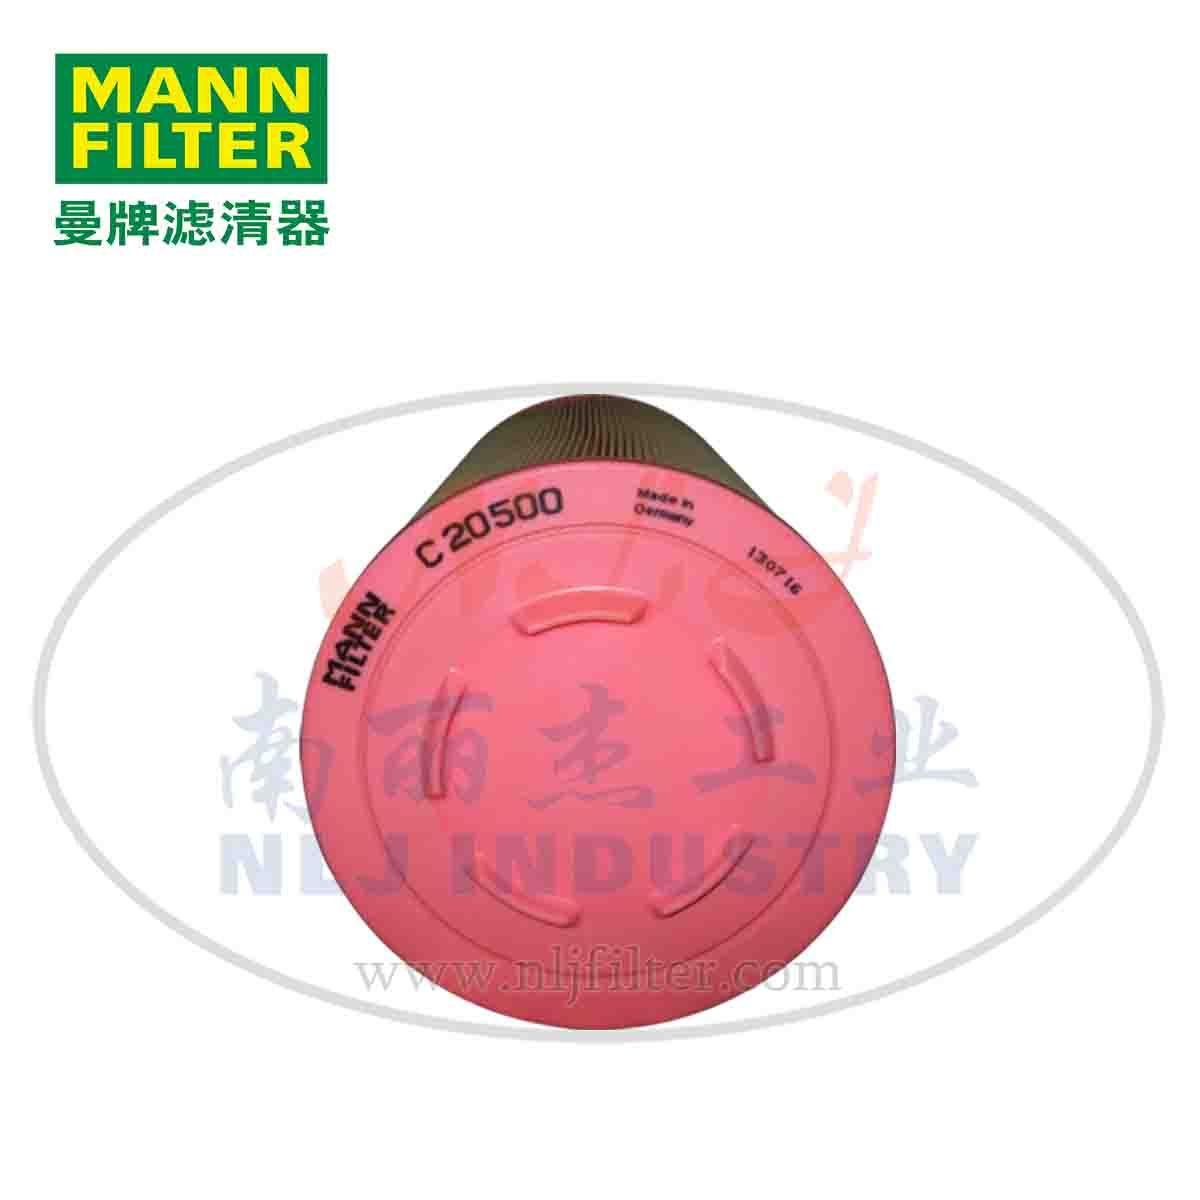 MANN-FILTER  C20500  Air Filter Element 3